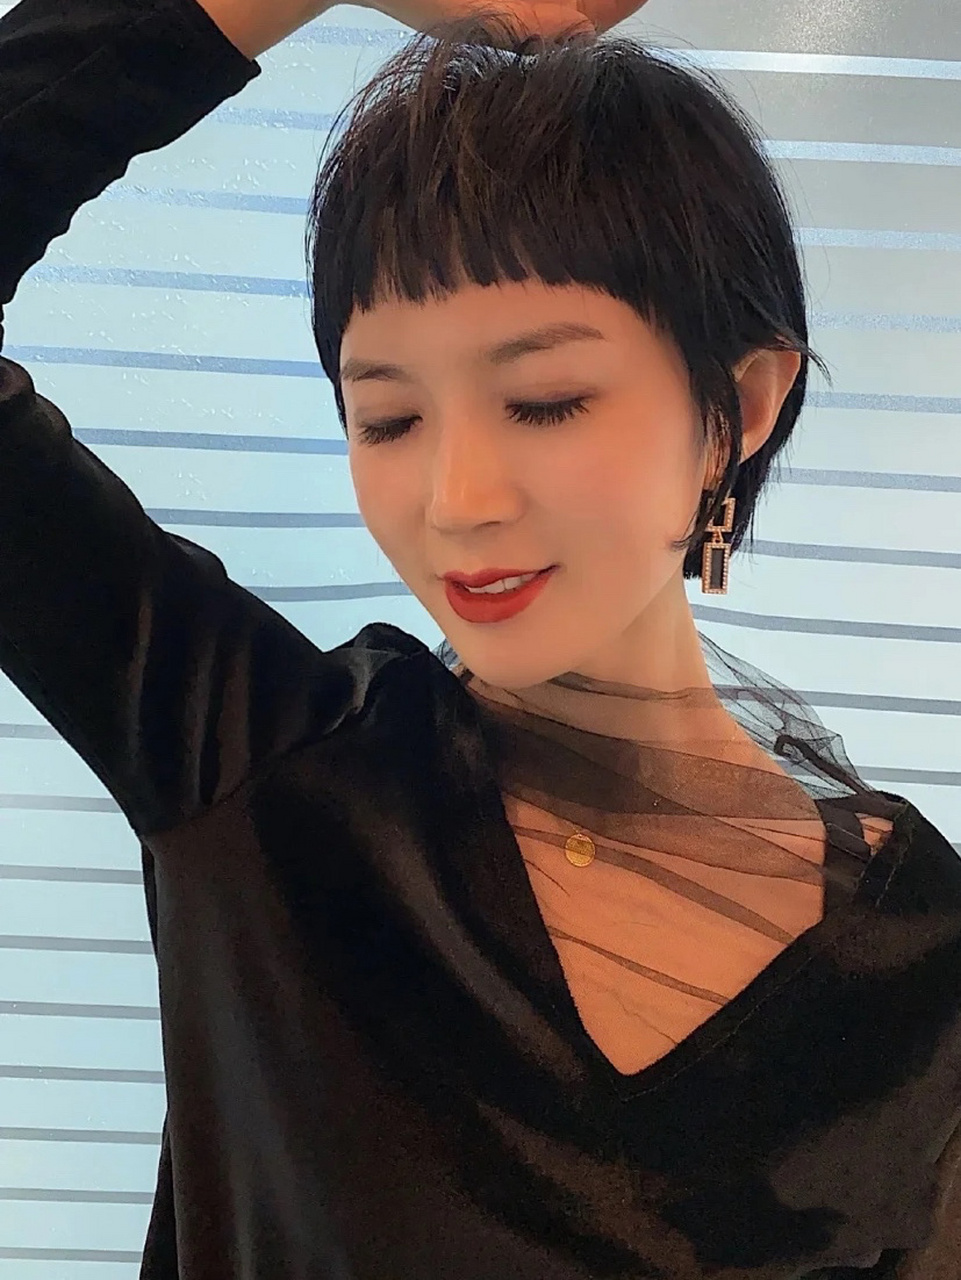 2020超短发日系短发韩系短发 现在流行的女生超短发发型,第一爆款应该